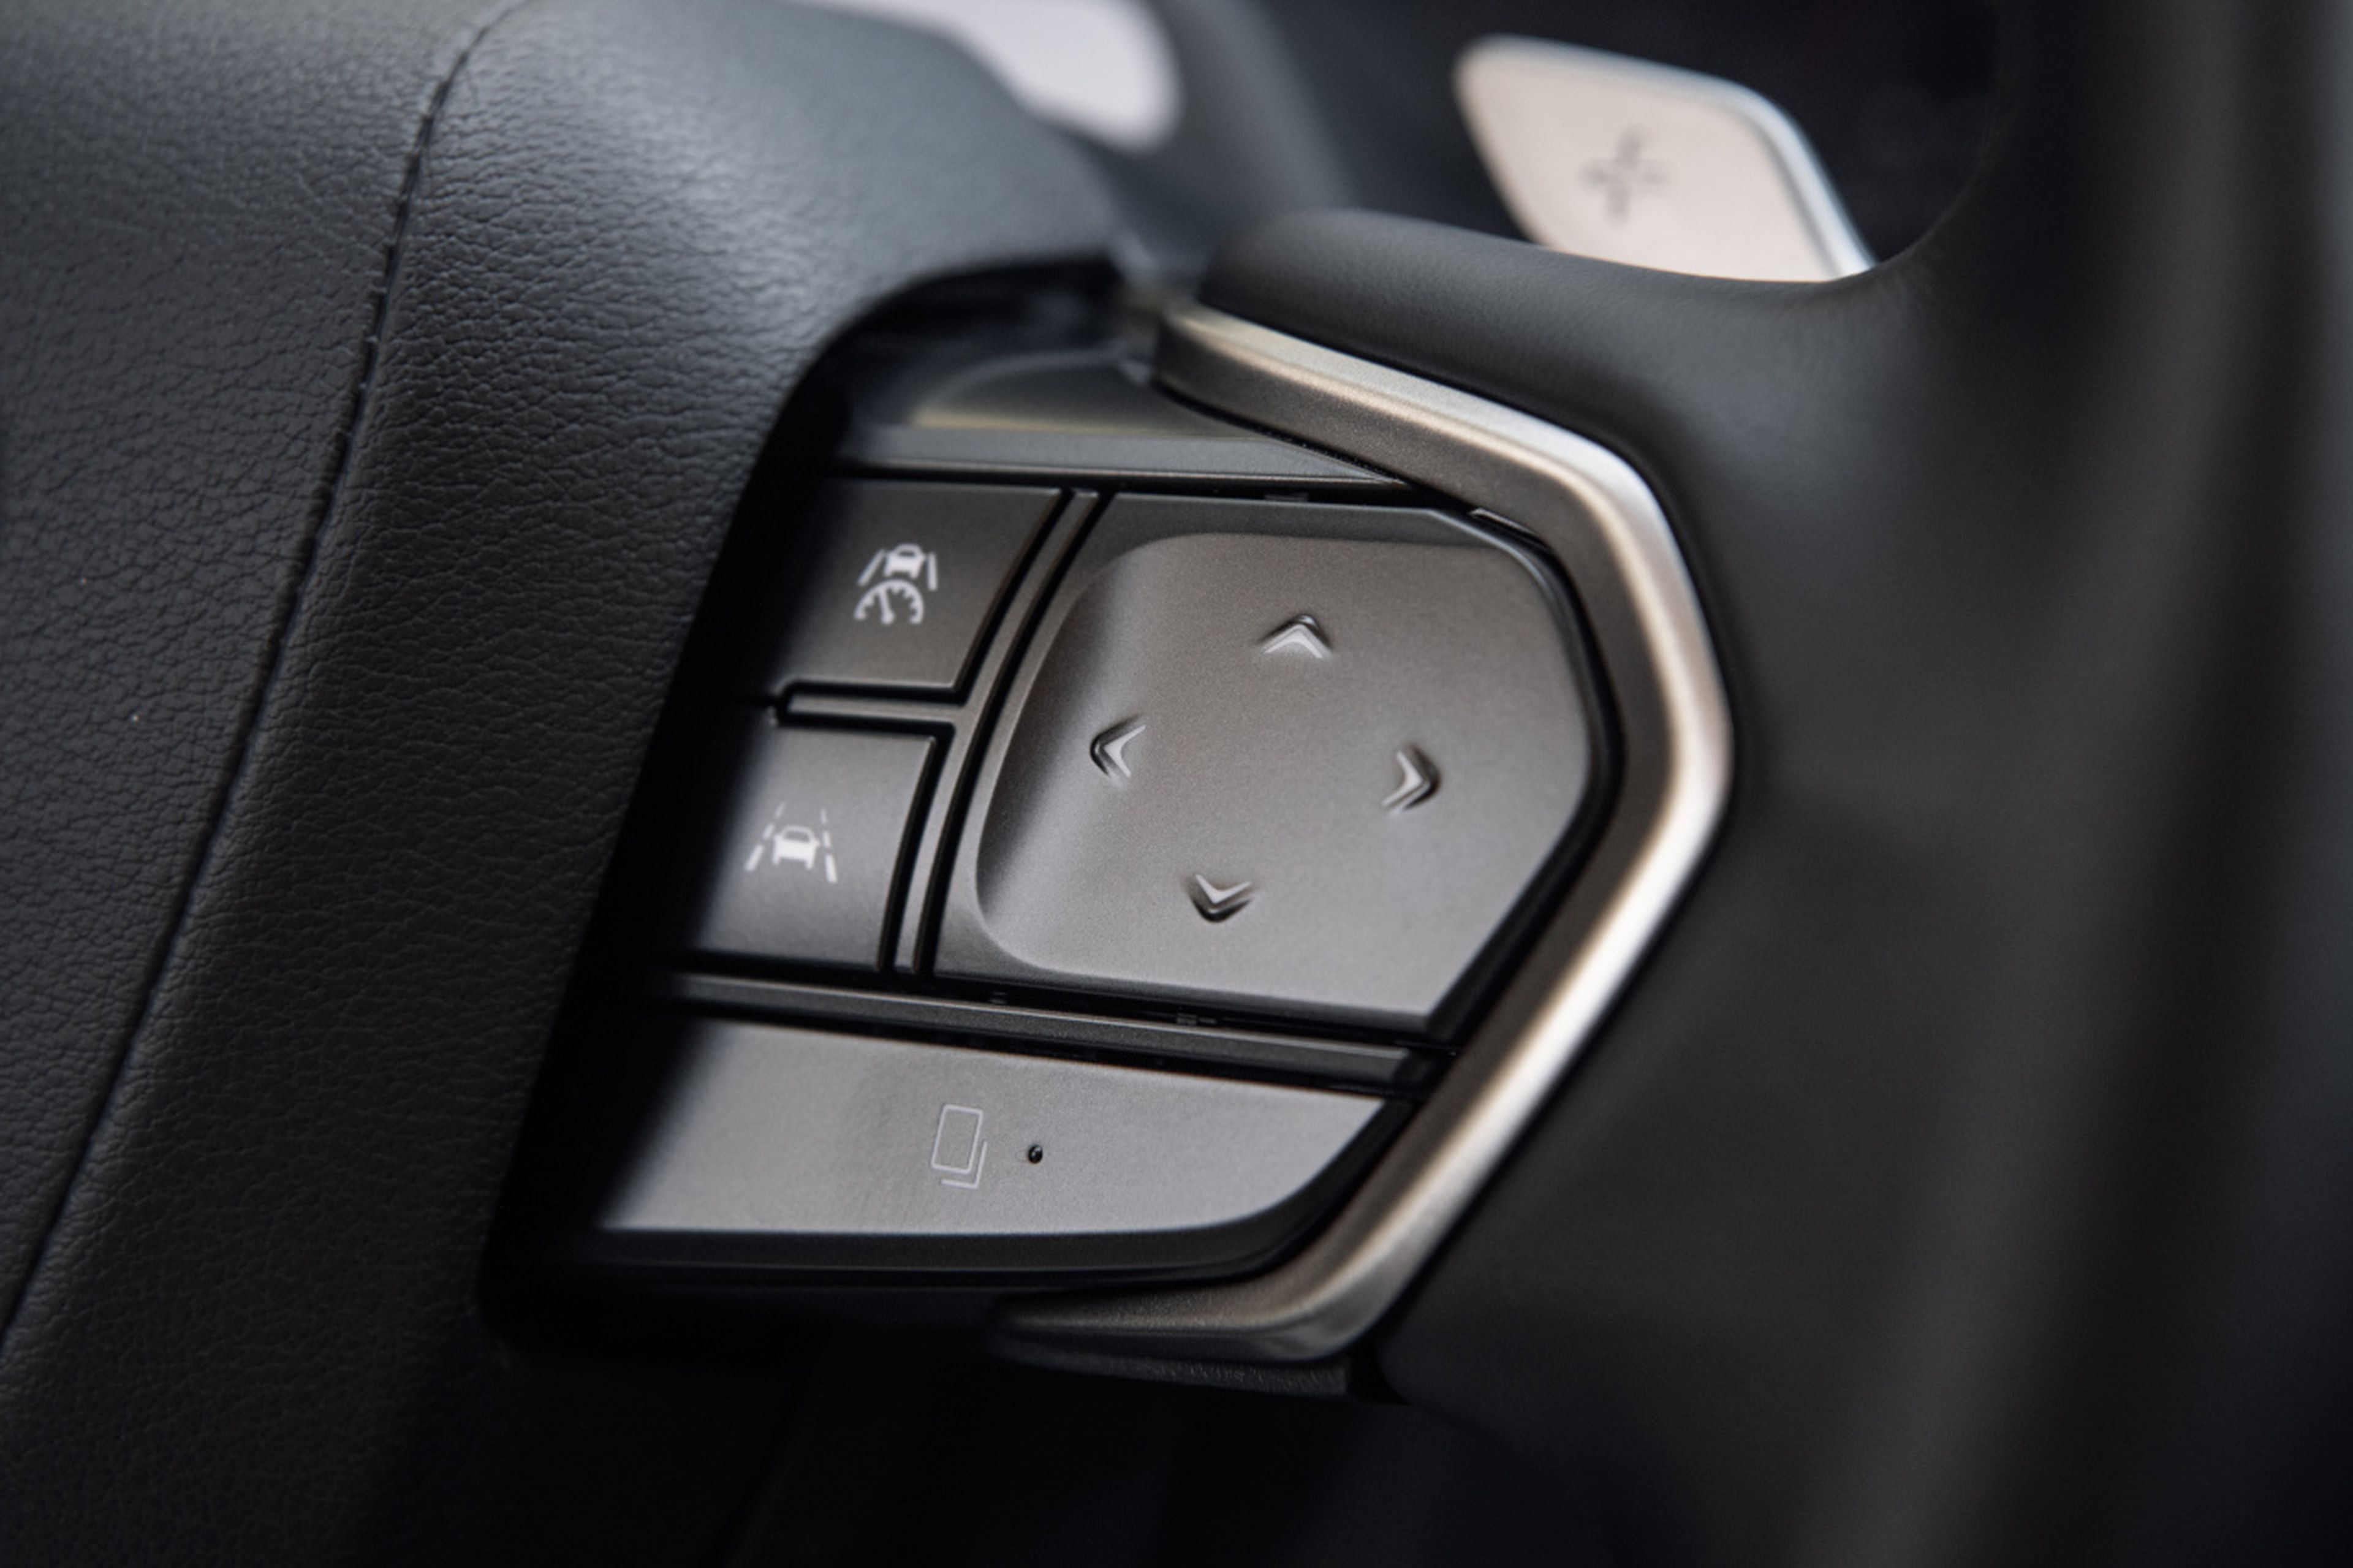 Con este pulsador se puede cambiar los modos de conducción, cuya imagen aparece en el head-up display